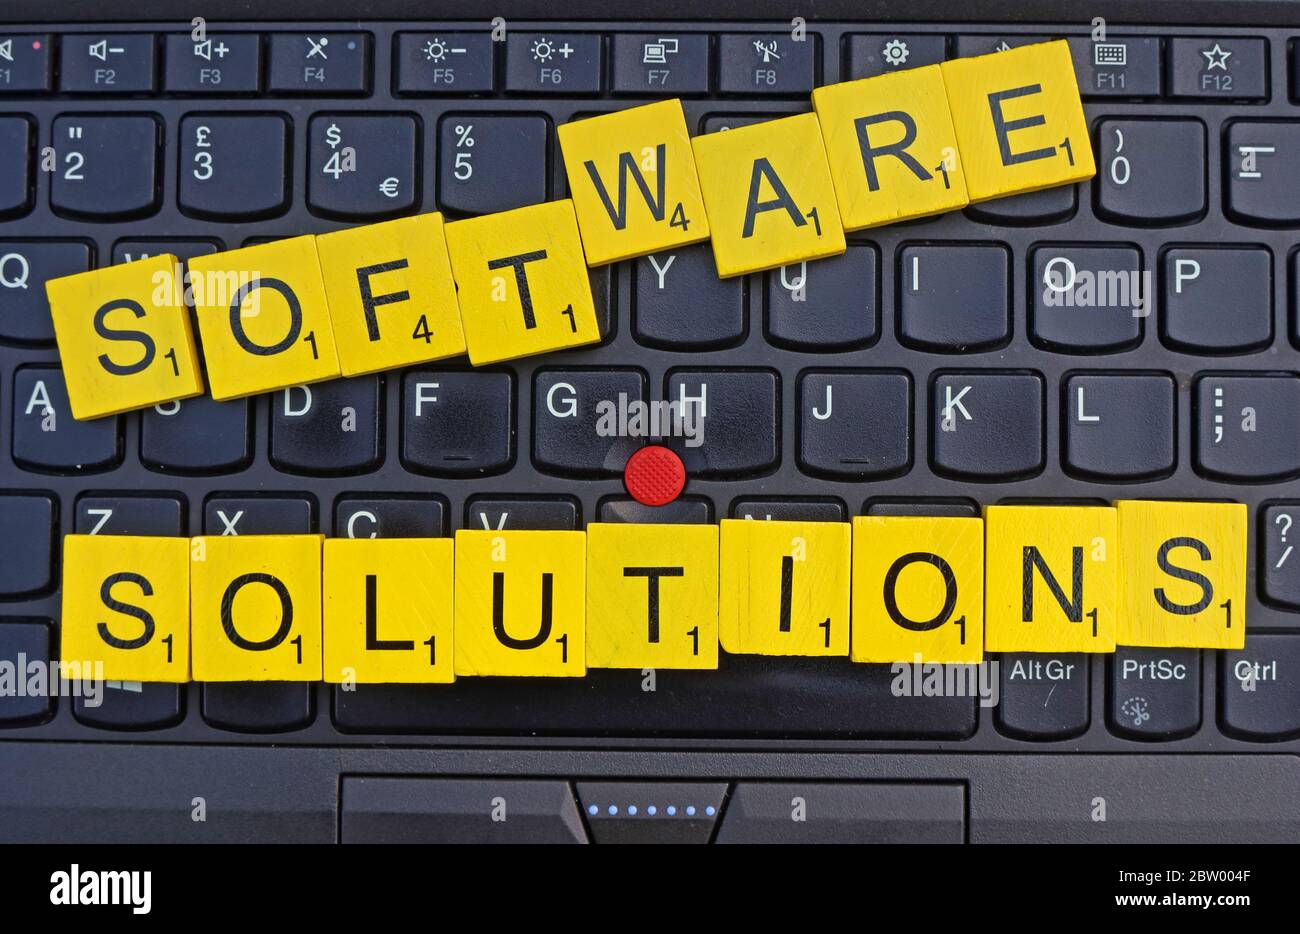 Software-Lösungen, geschrieben in scrabble Buchstaben auf einer Tastatur, Software-Häuser, Enterprise Software-Lösungen, Business-Software, KMU-Lösungen Stockfoto